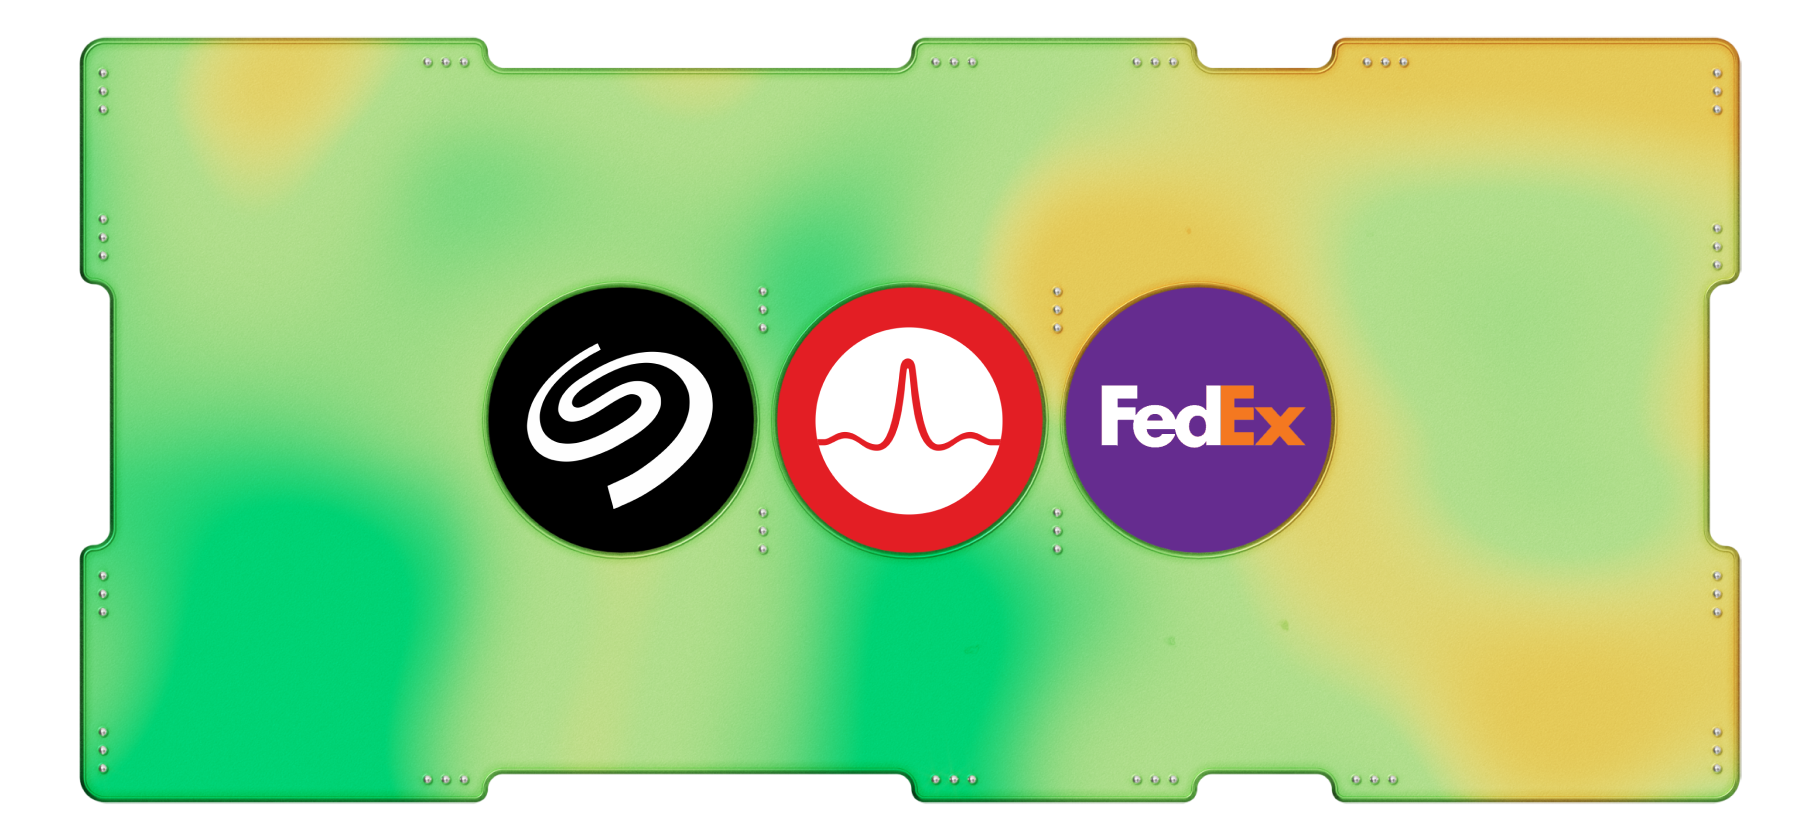 Календарь инвестора: Seagate, Broadcom и FedEx заплатят дивиденды